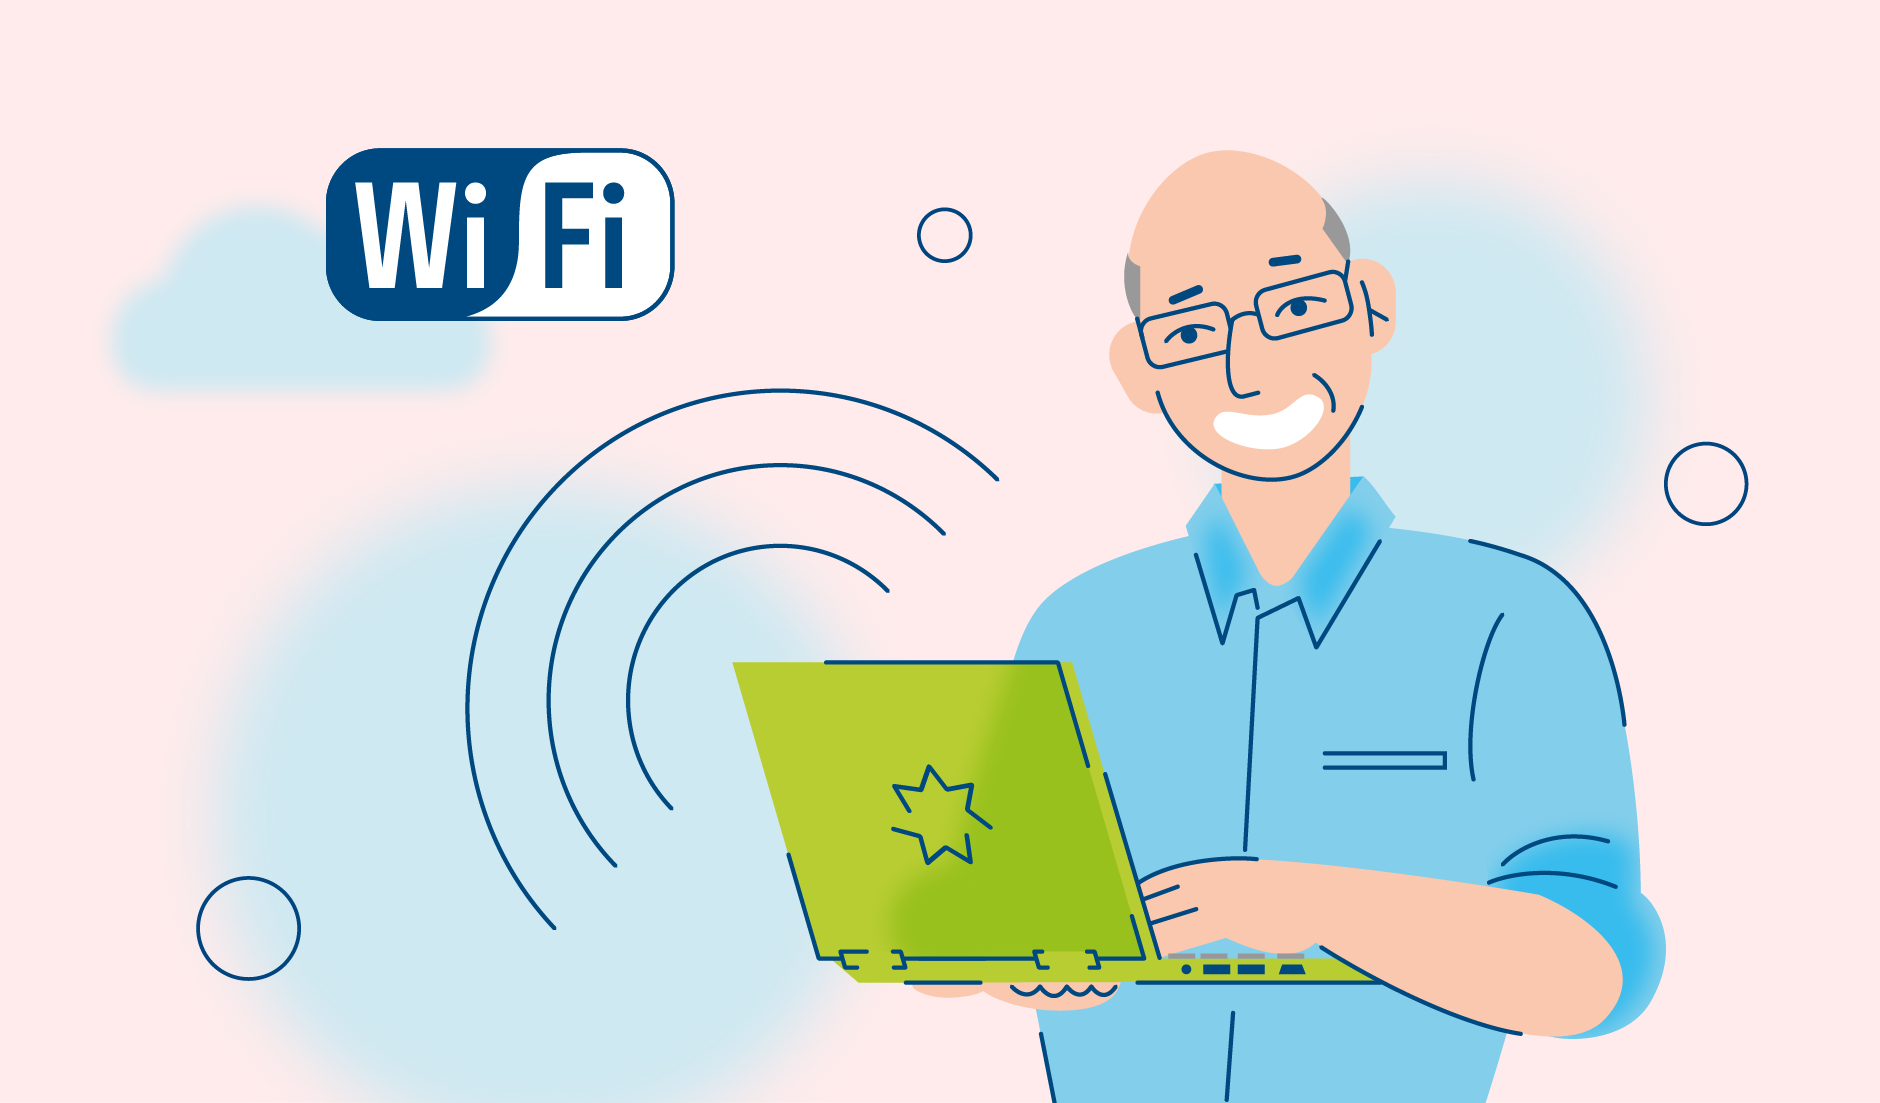 Почему интернет не работает через кабель, а через WIFI работает? — Хабр Q&A